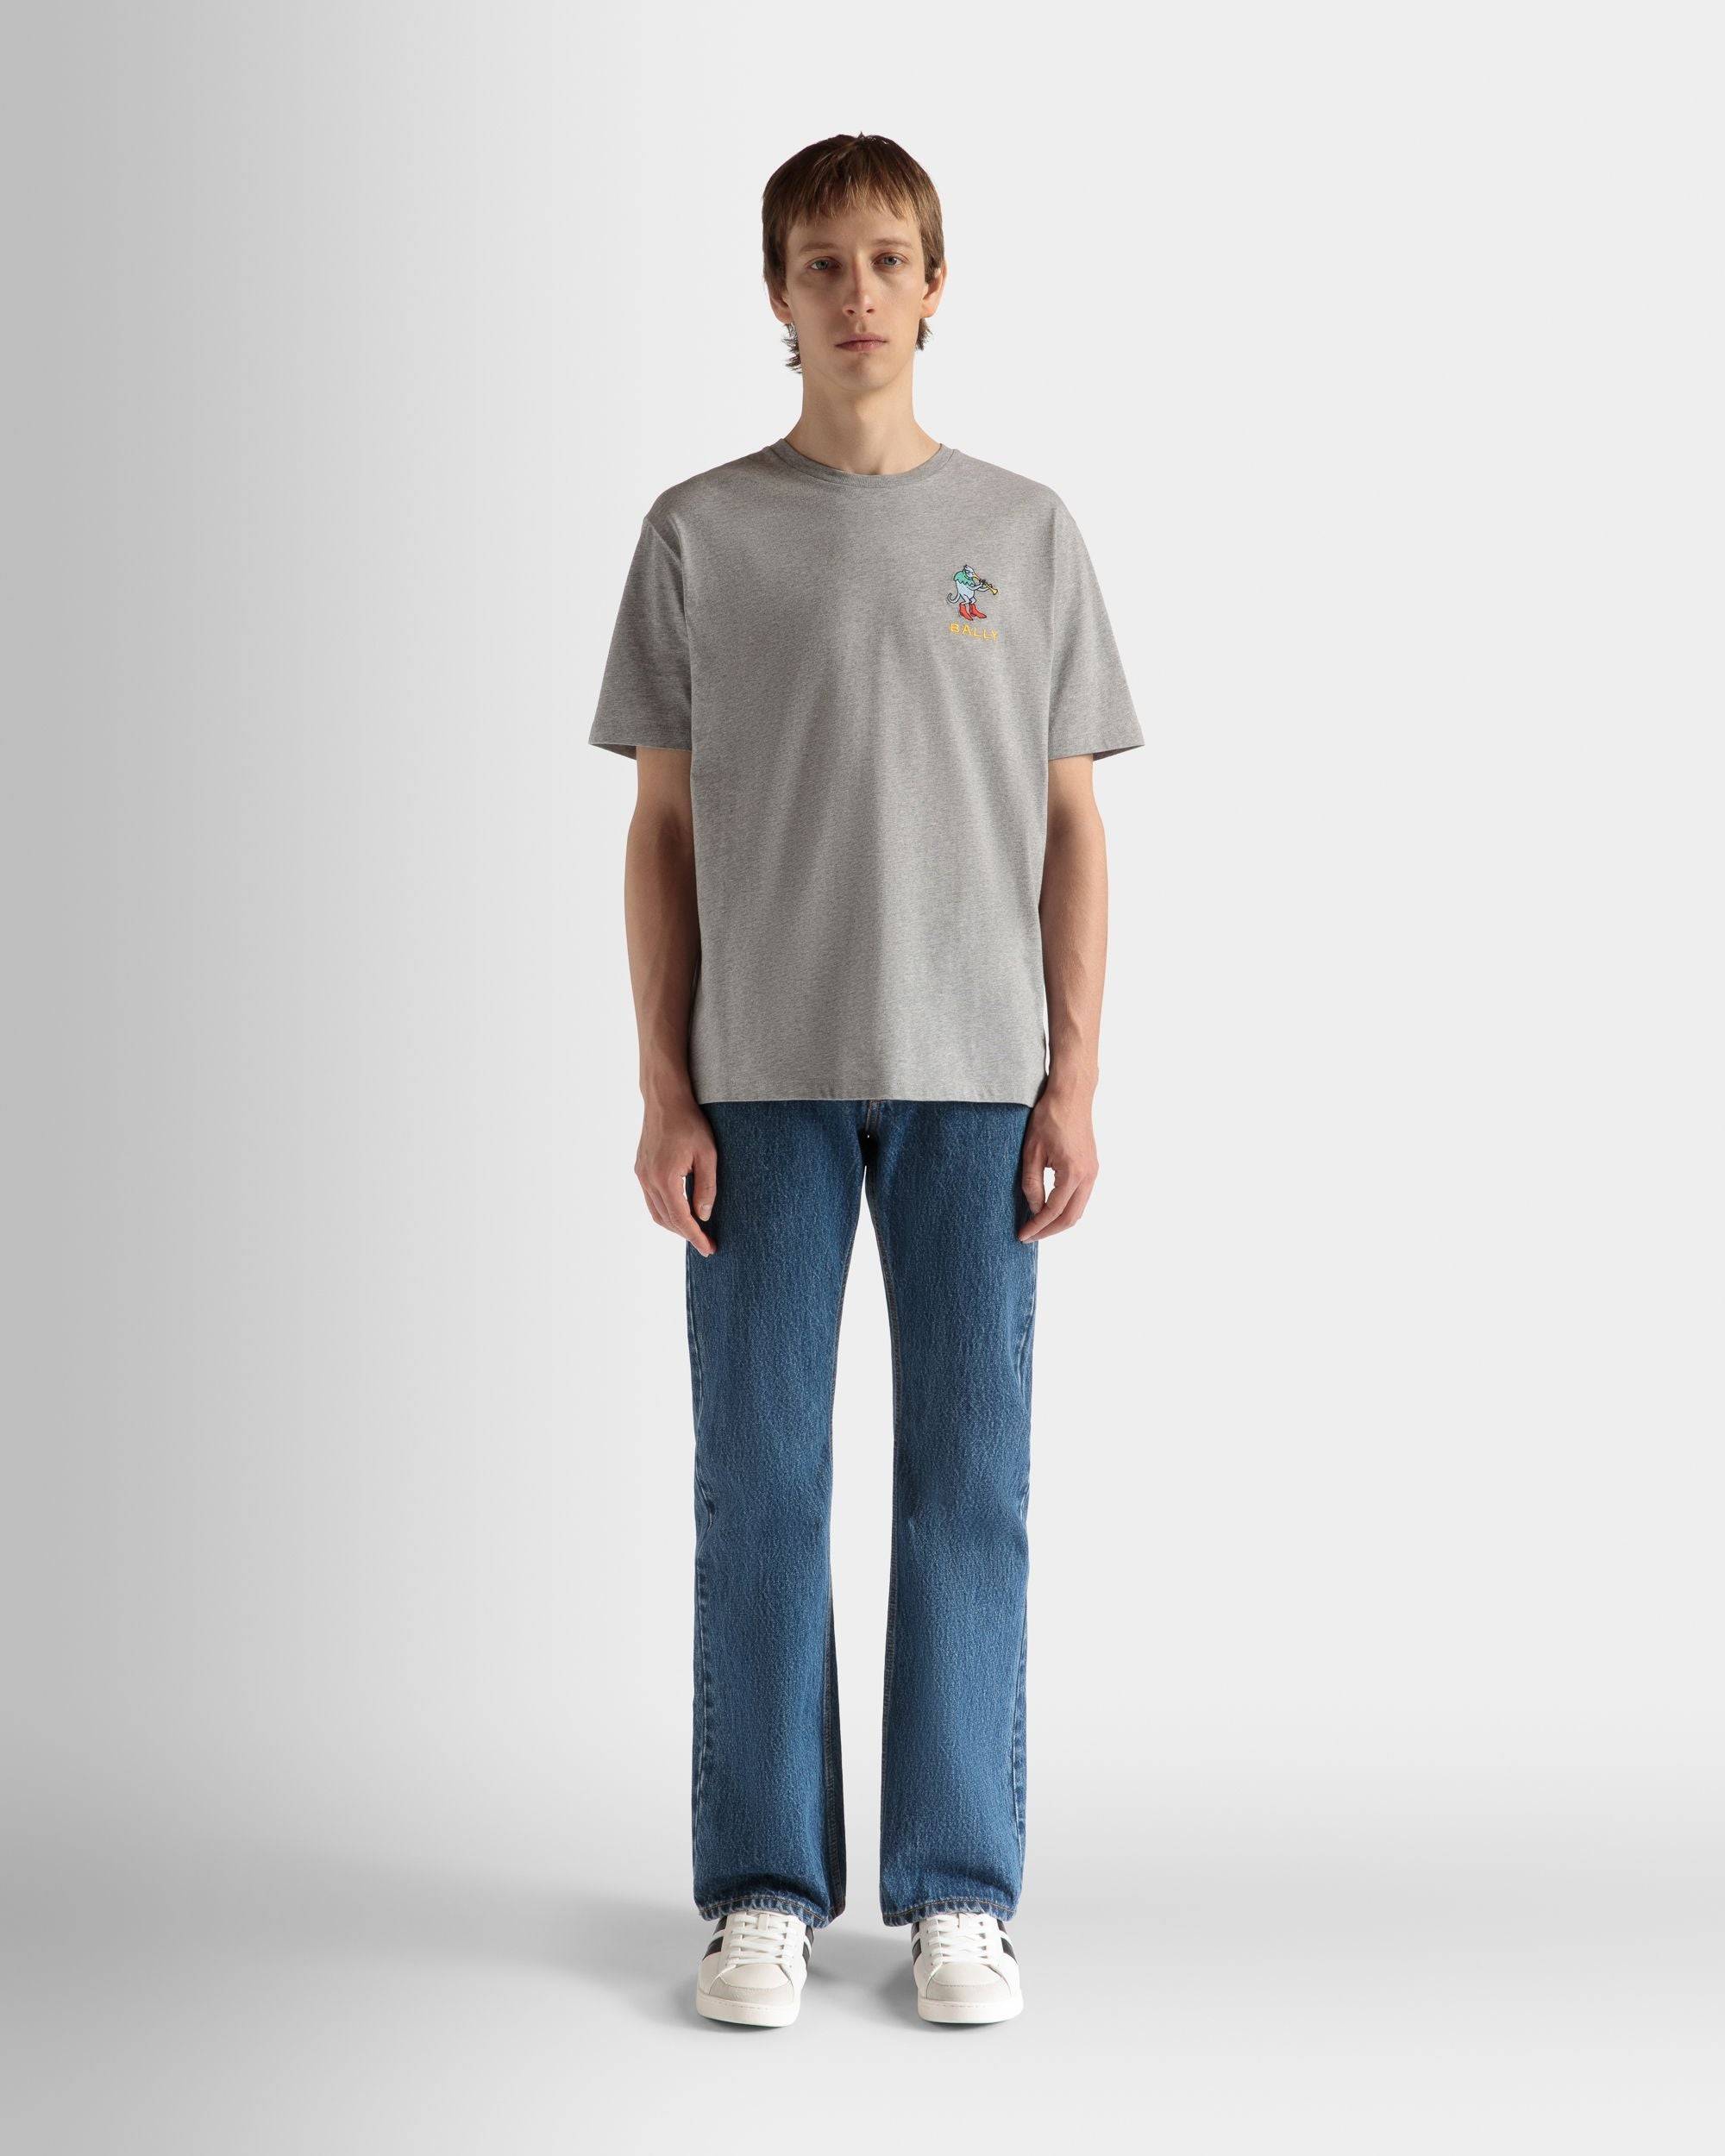 T-Shirt Aus Melierter Baumwolle In Grau - Herren - Bally - 02